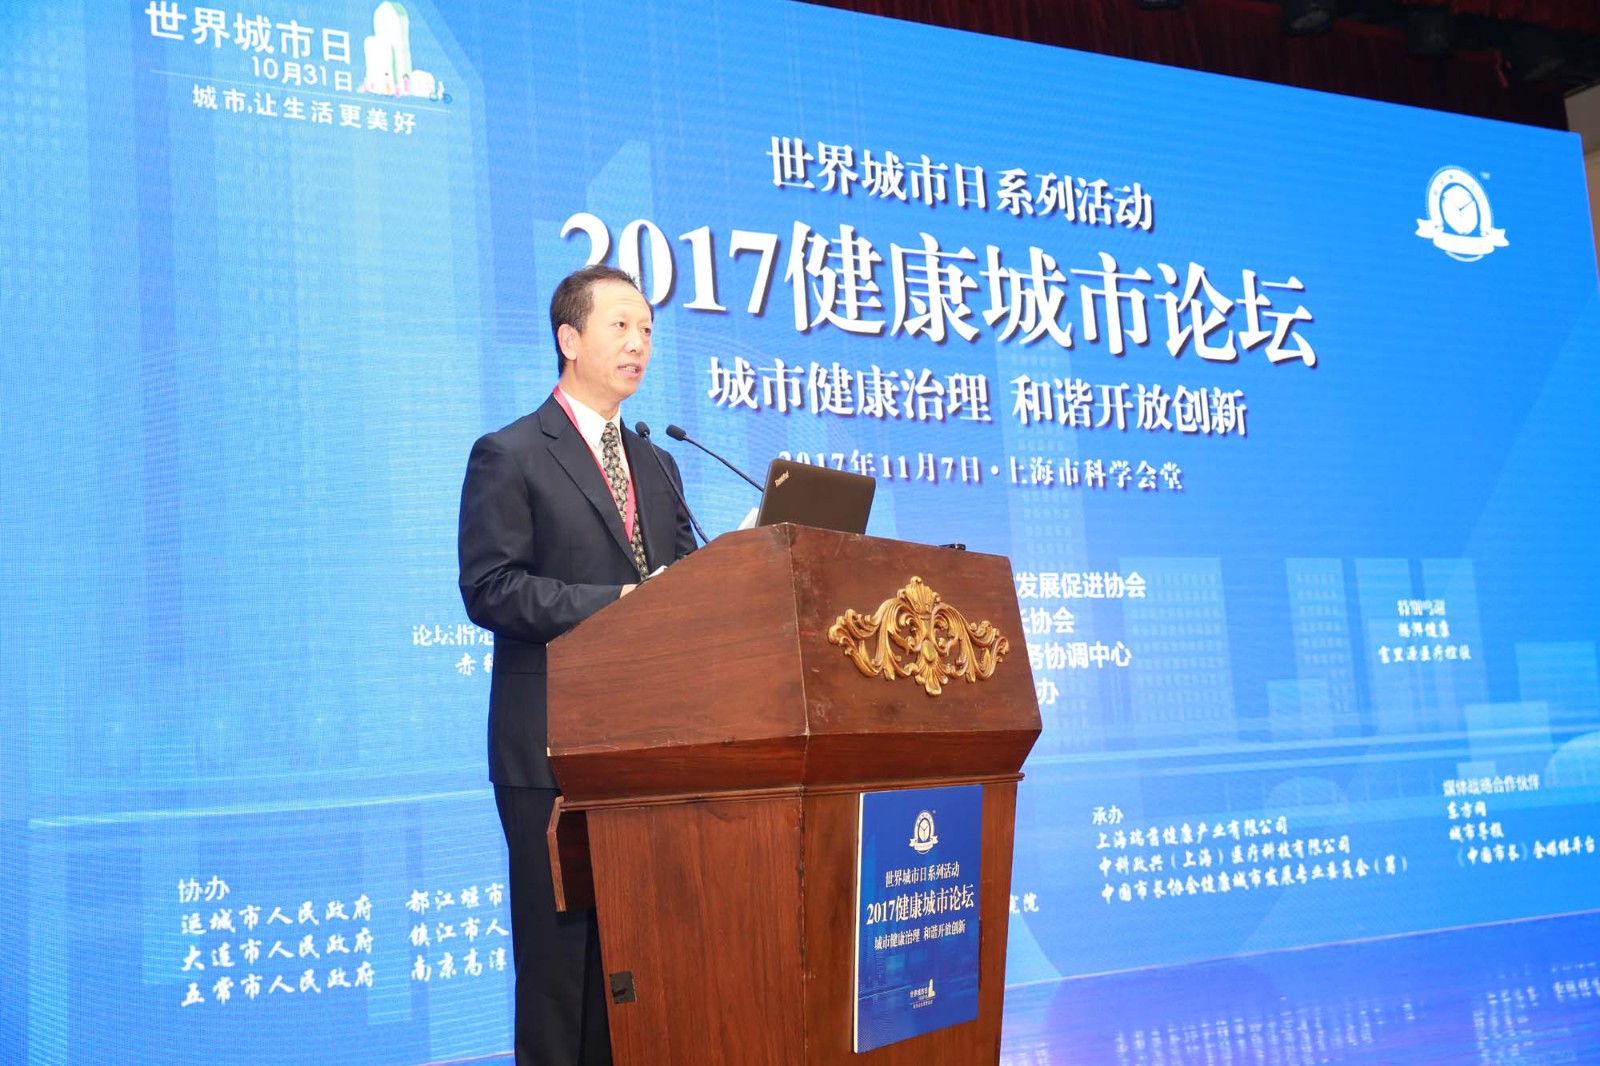 “2017健康论坛”在上海科学会堂顺利举行